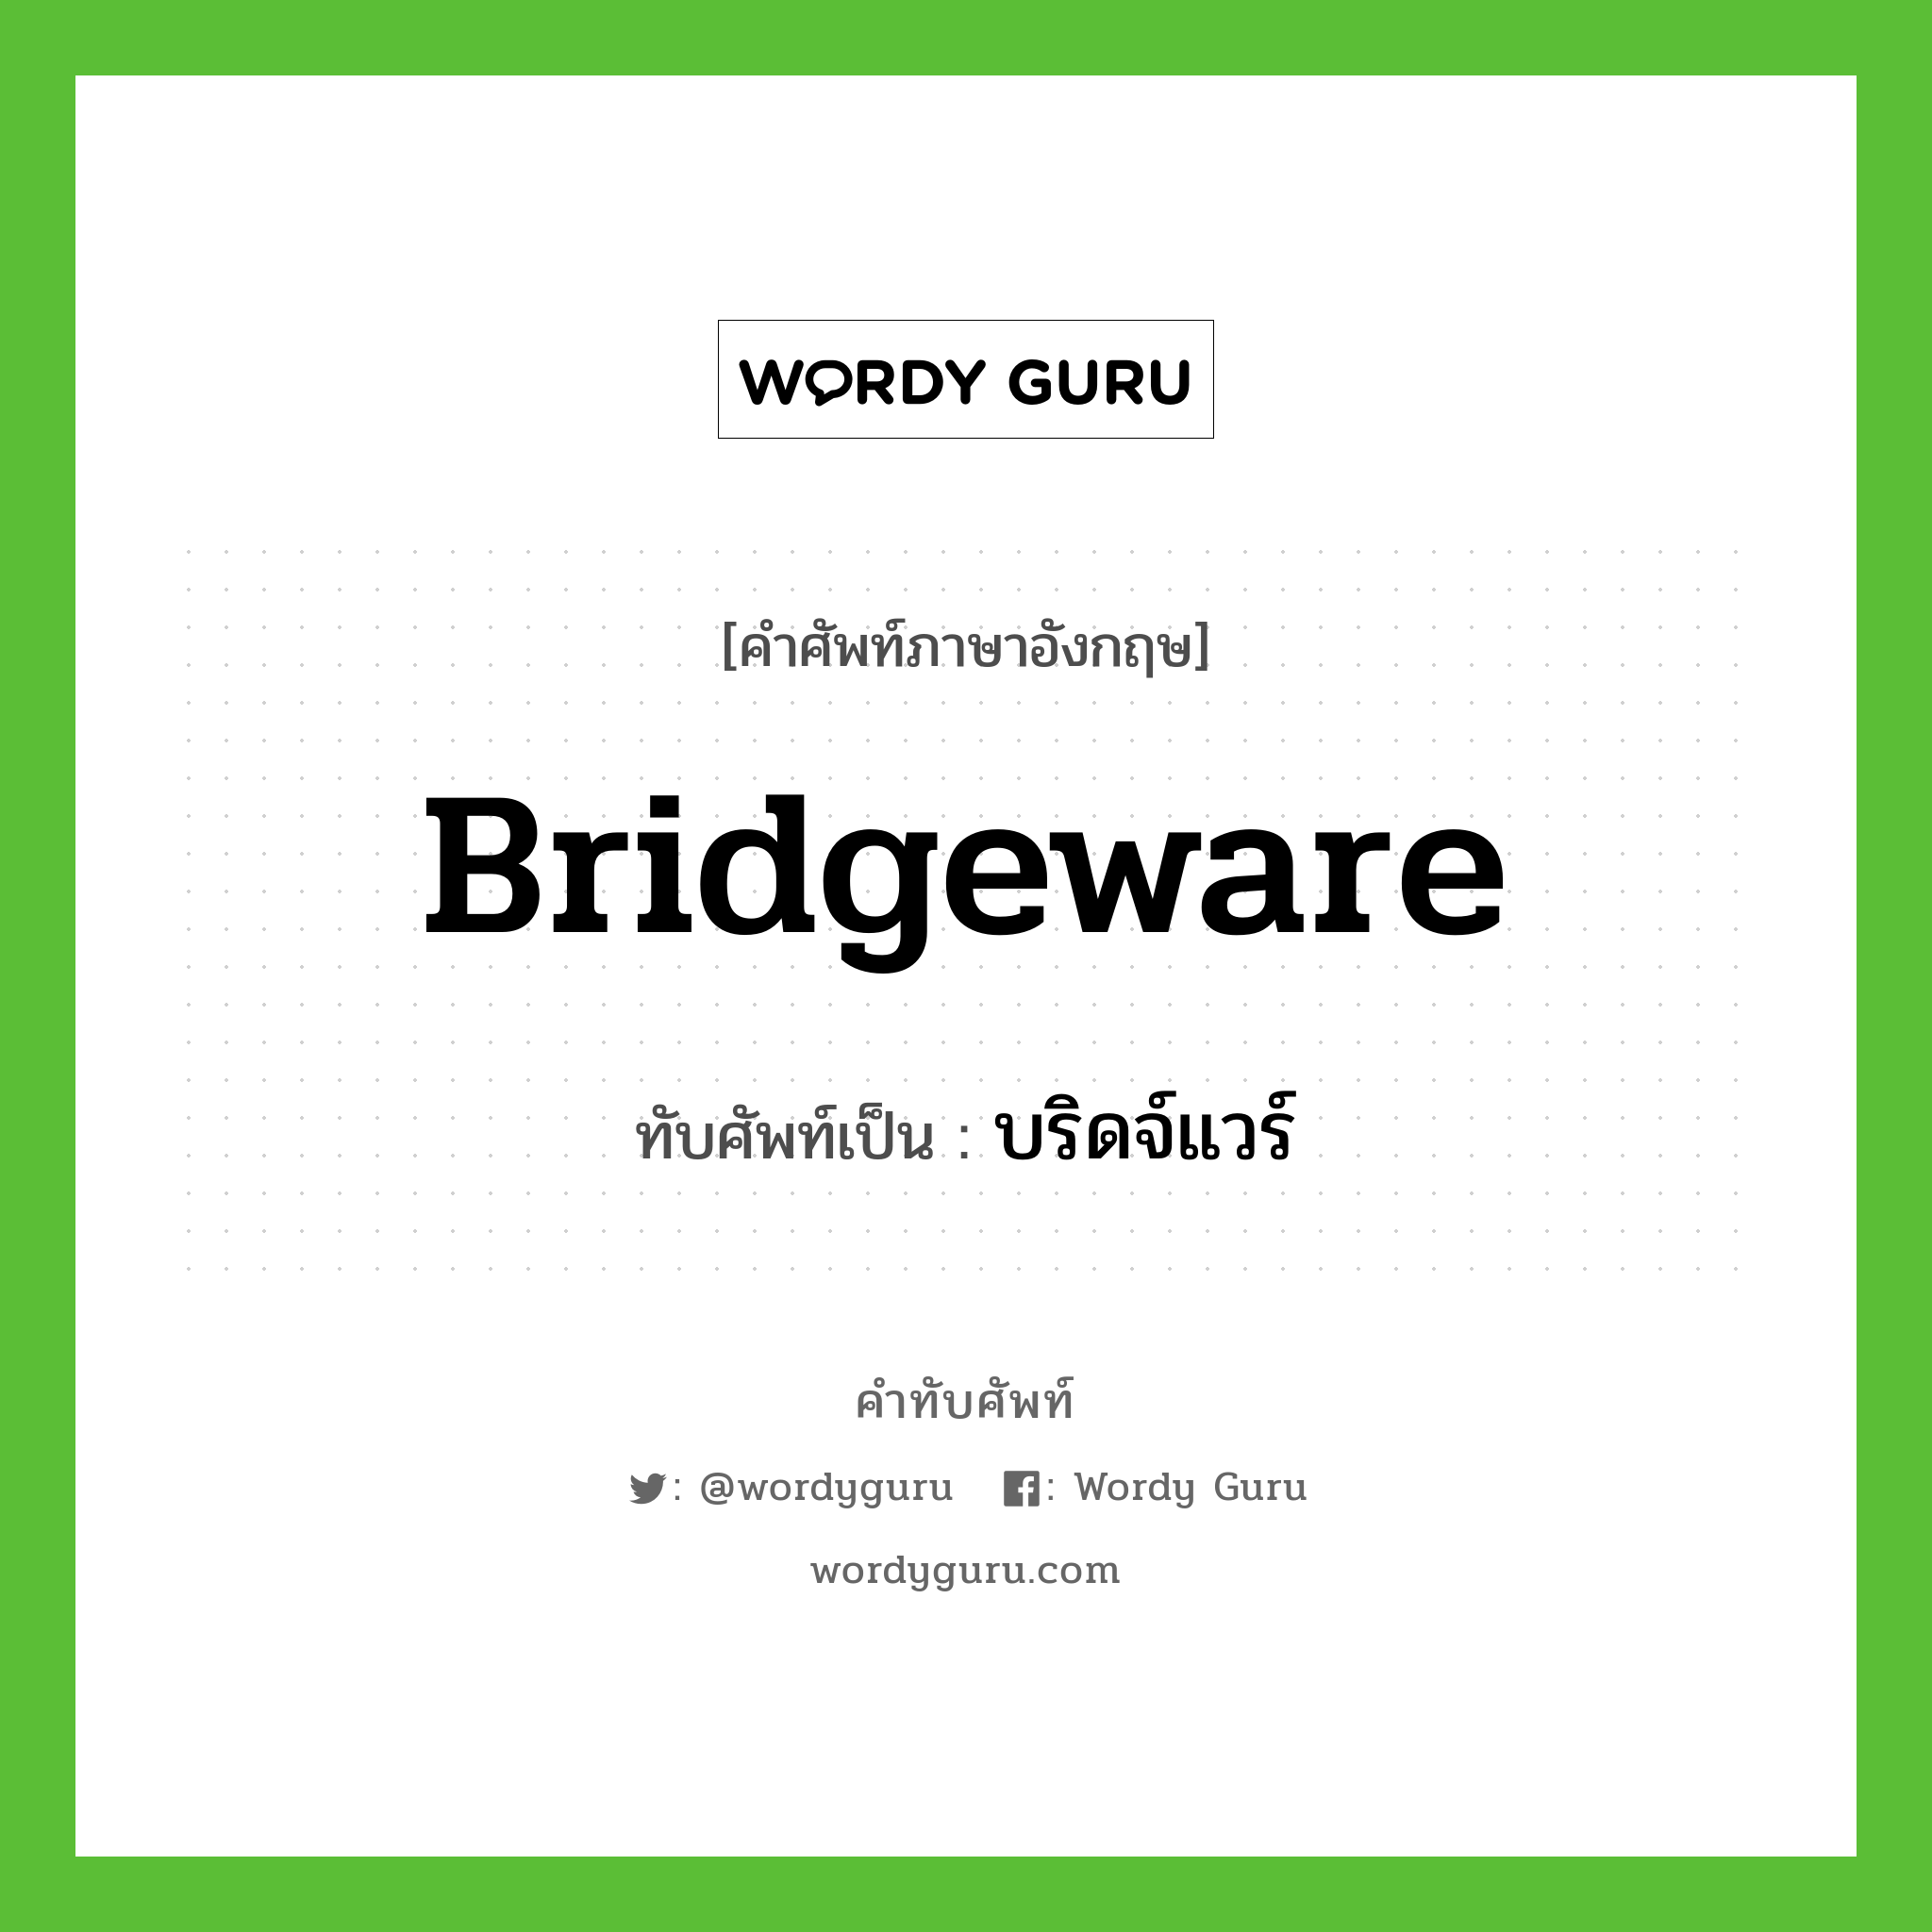 บริดจ์แวร์ เขียนอย่างไร?, คำศัพท์ภาษาอังกฤษ บริดจ์แวร์ ทับศัพท์เป็น bridgeware